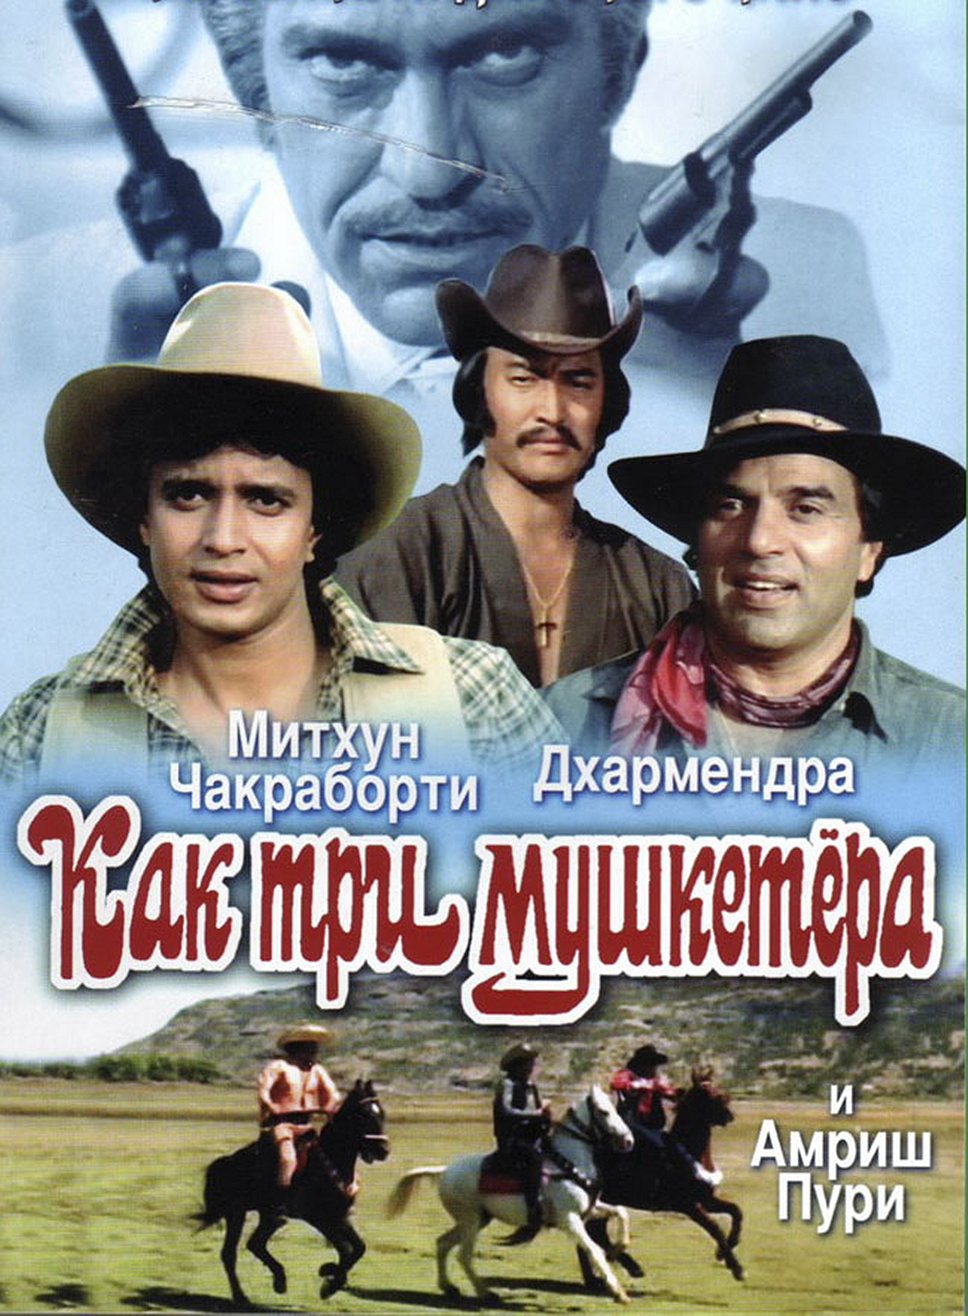 «Как три мушкетера». Режиссер Прамод Чакраборти, 1984 год